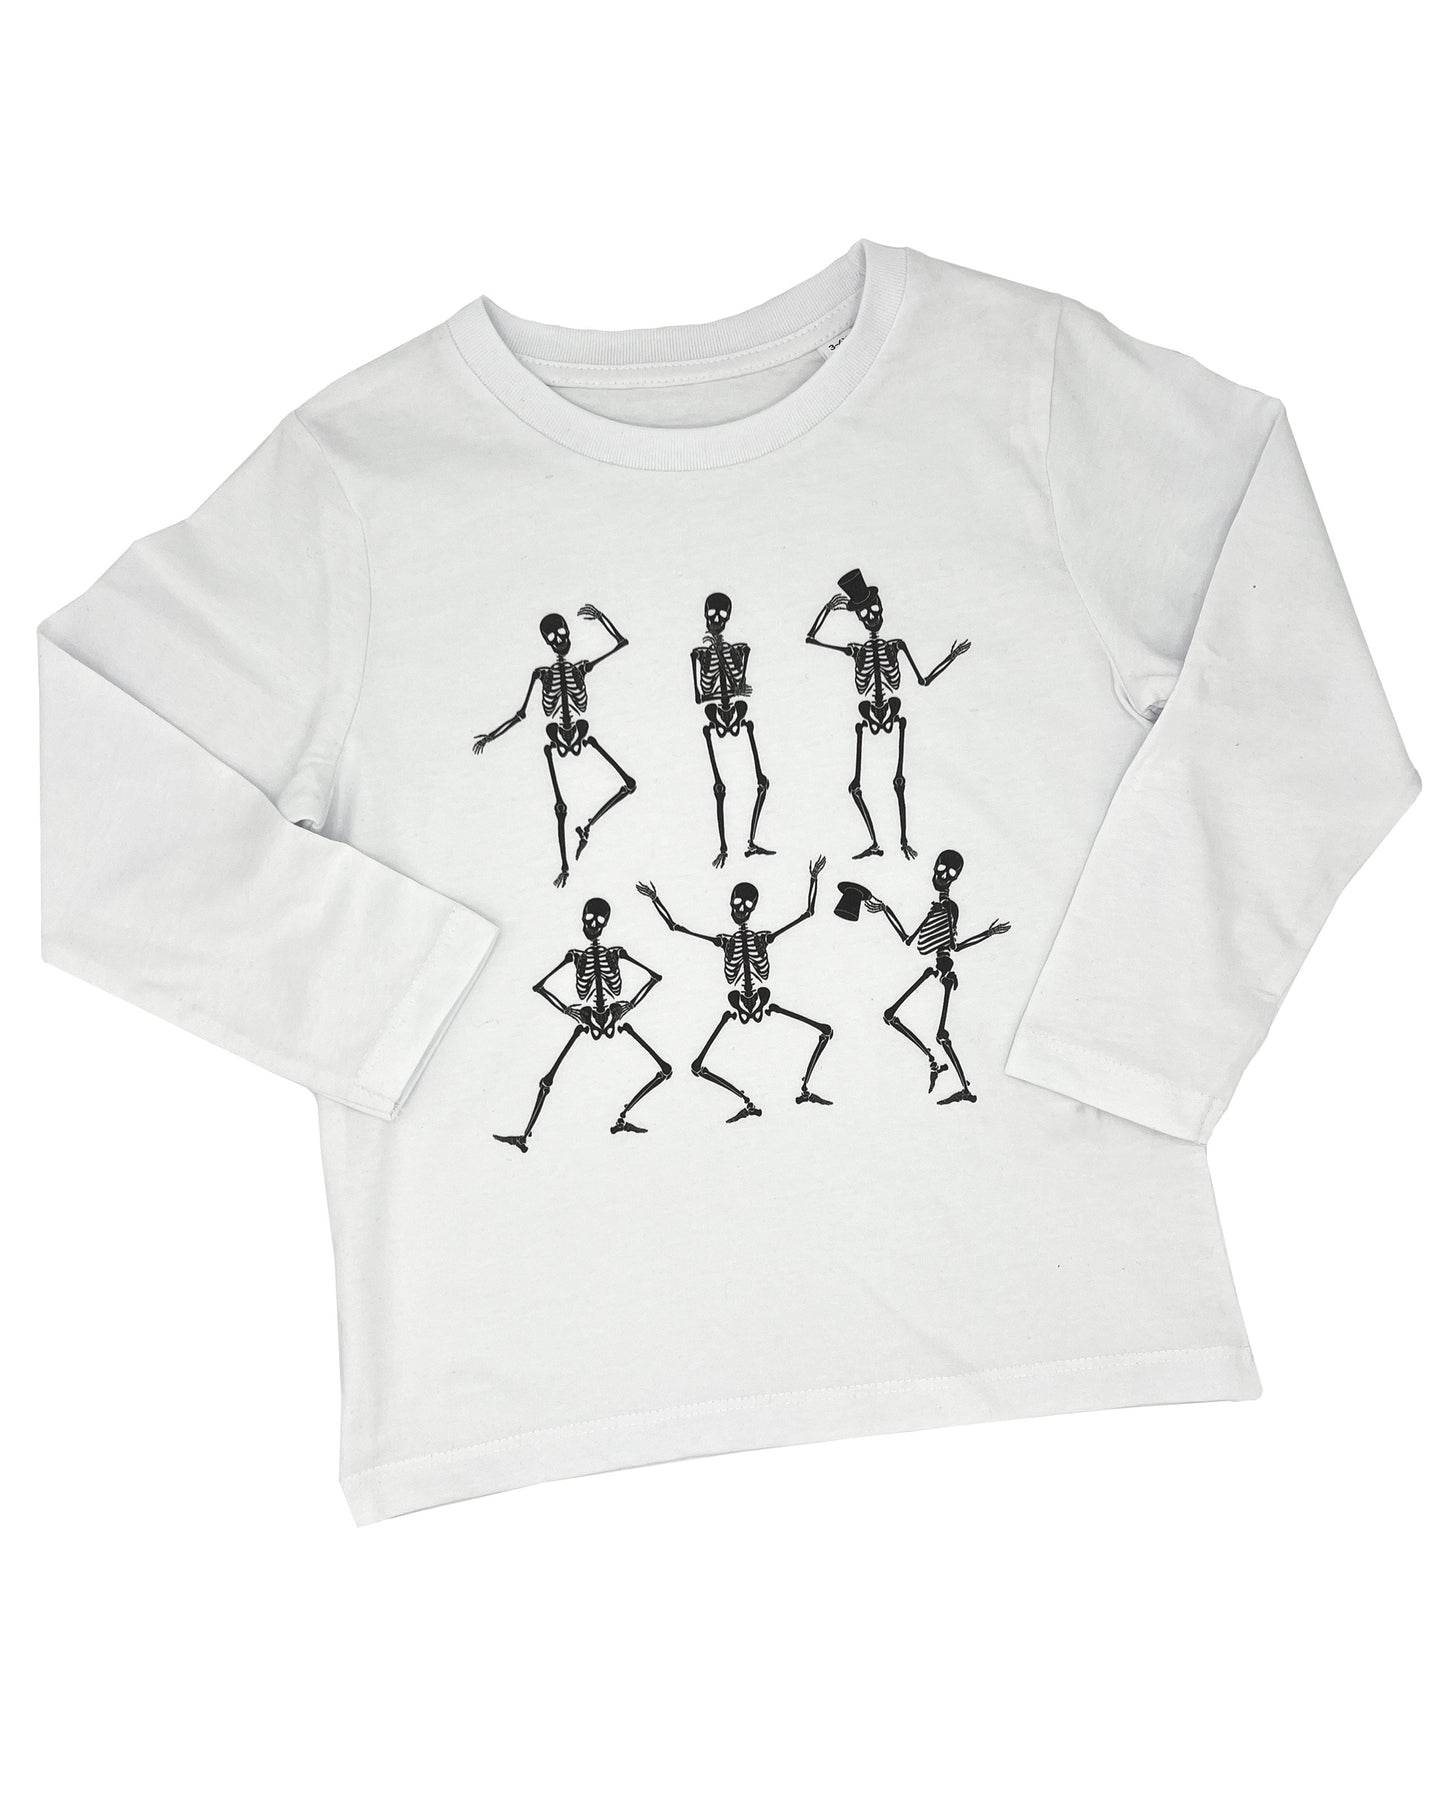 SCULLY DANCY - Halloween - Kids Long Sleeve T Shirt - Little Mate Adventures